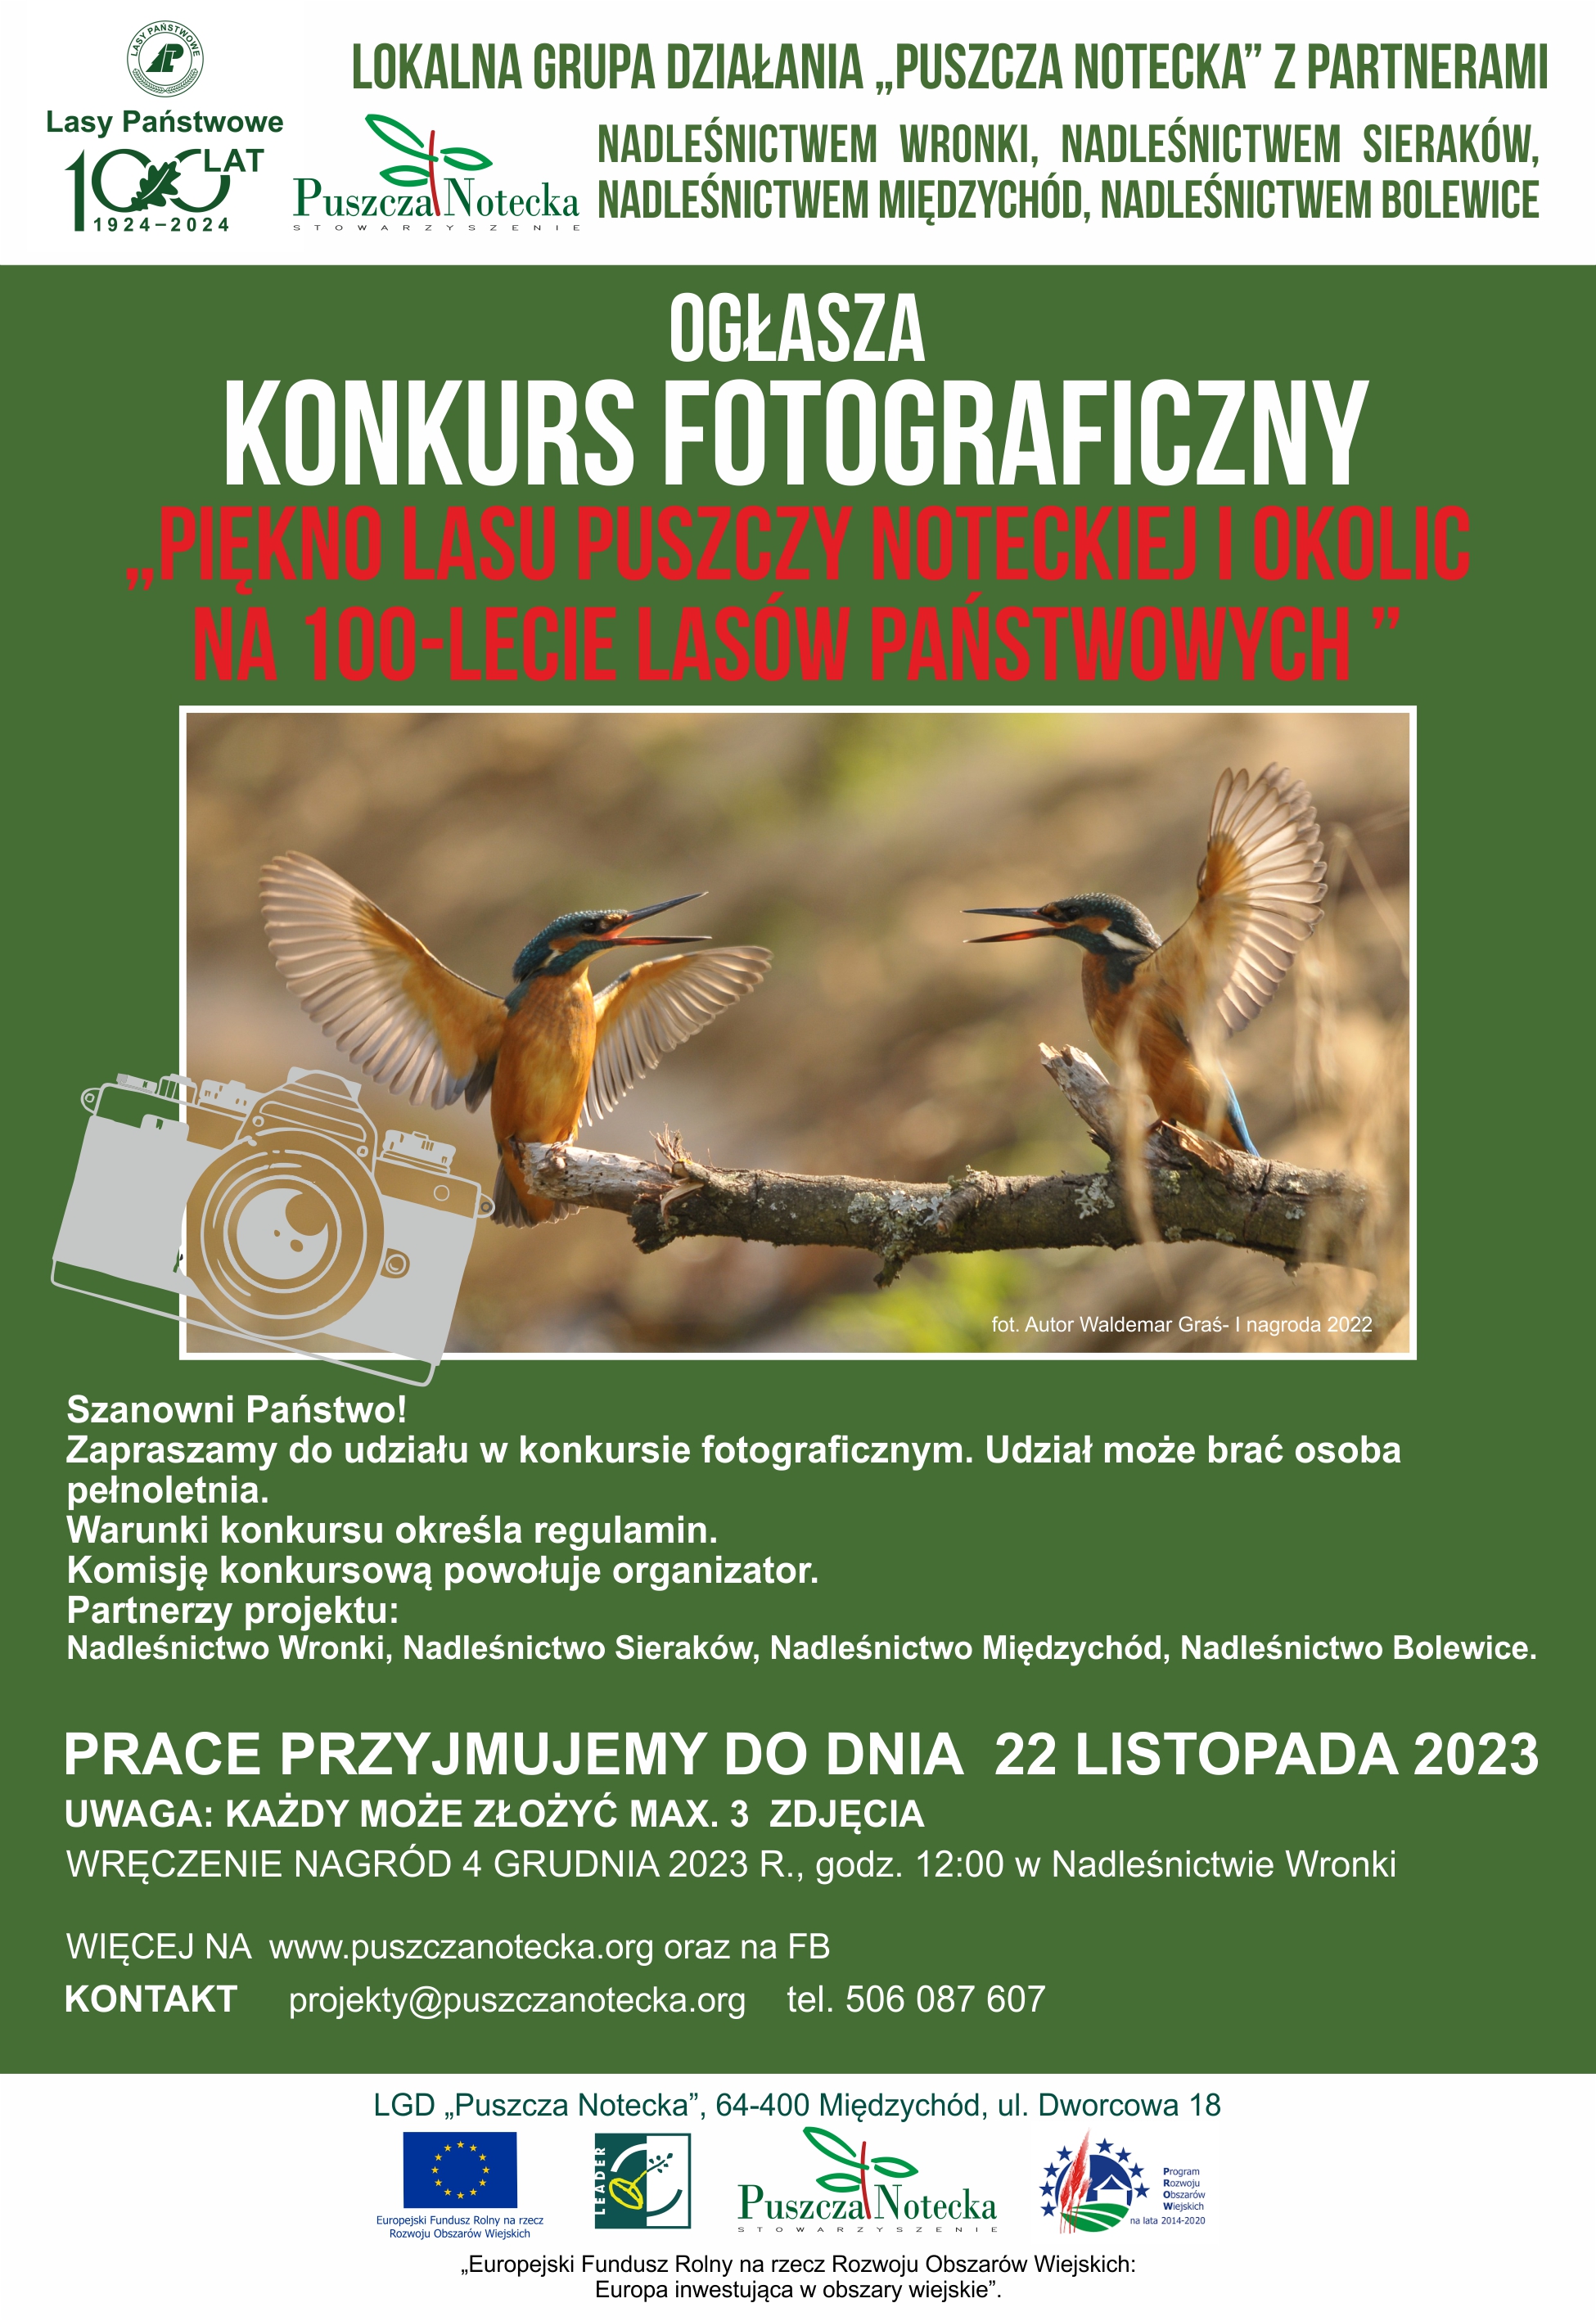 Plakat informacyjny dotyczący konkursu fotograficznego pod tytułem Piękno Lasu Puszczy Noteckiej i okolic na 100-lecie Lasów Państwowych